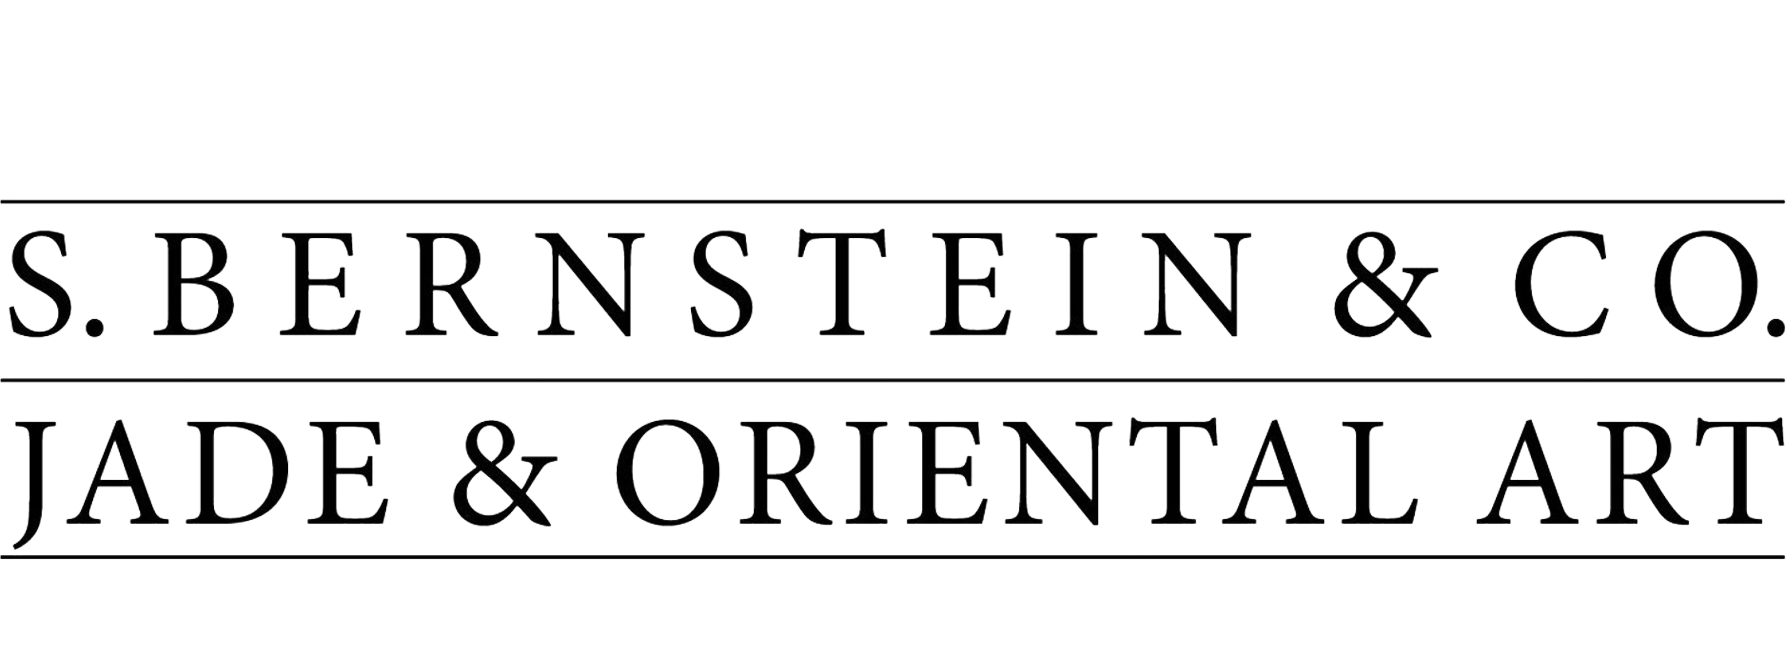 S. Bernstein & Co. Jade & Oriental Art